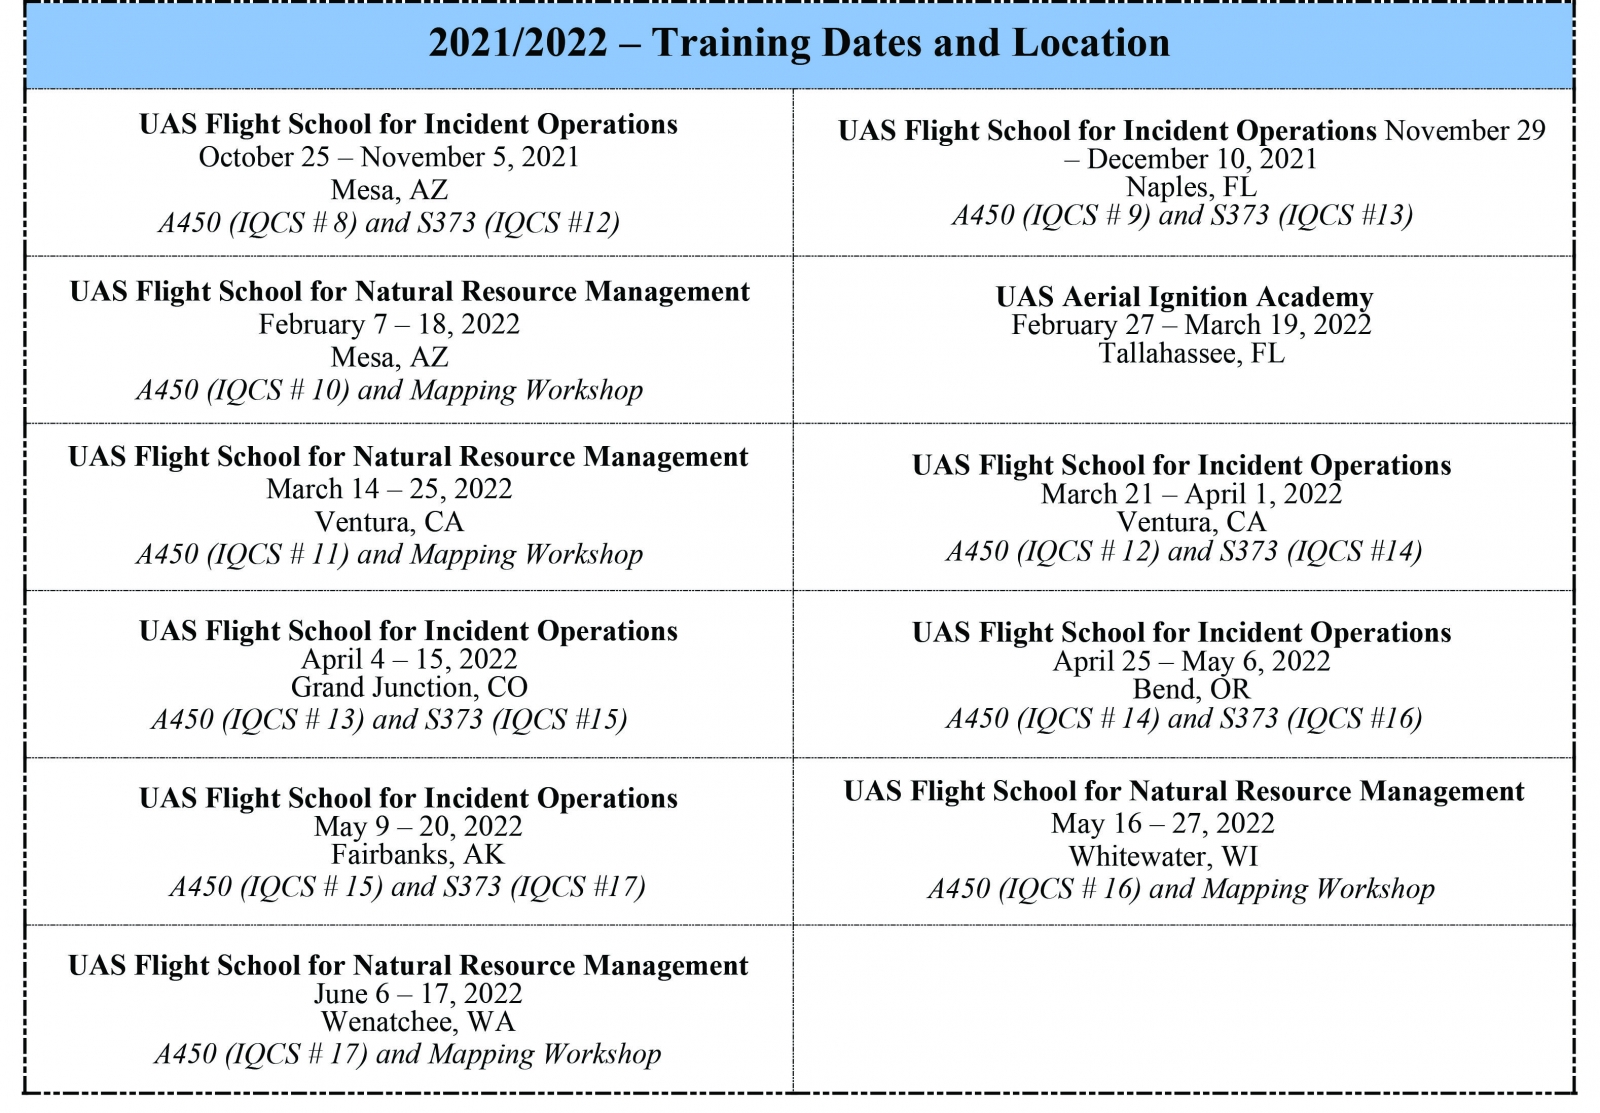 UAS Training Program 2021/2022 Schedule